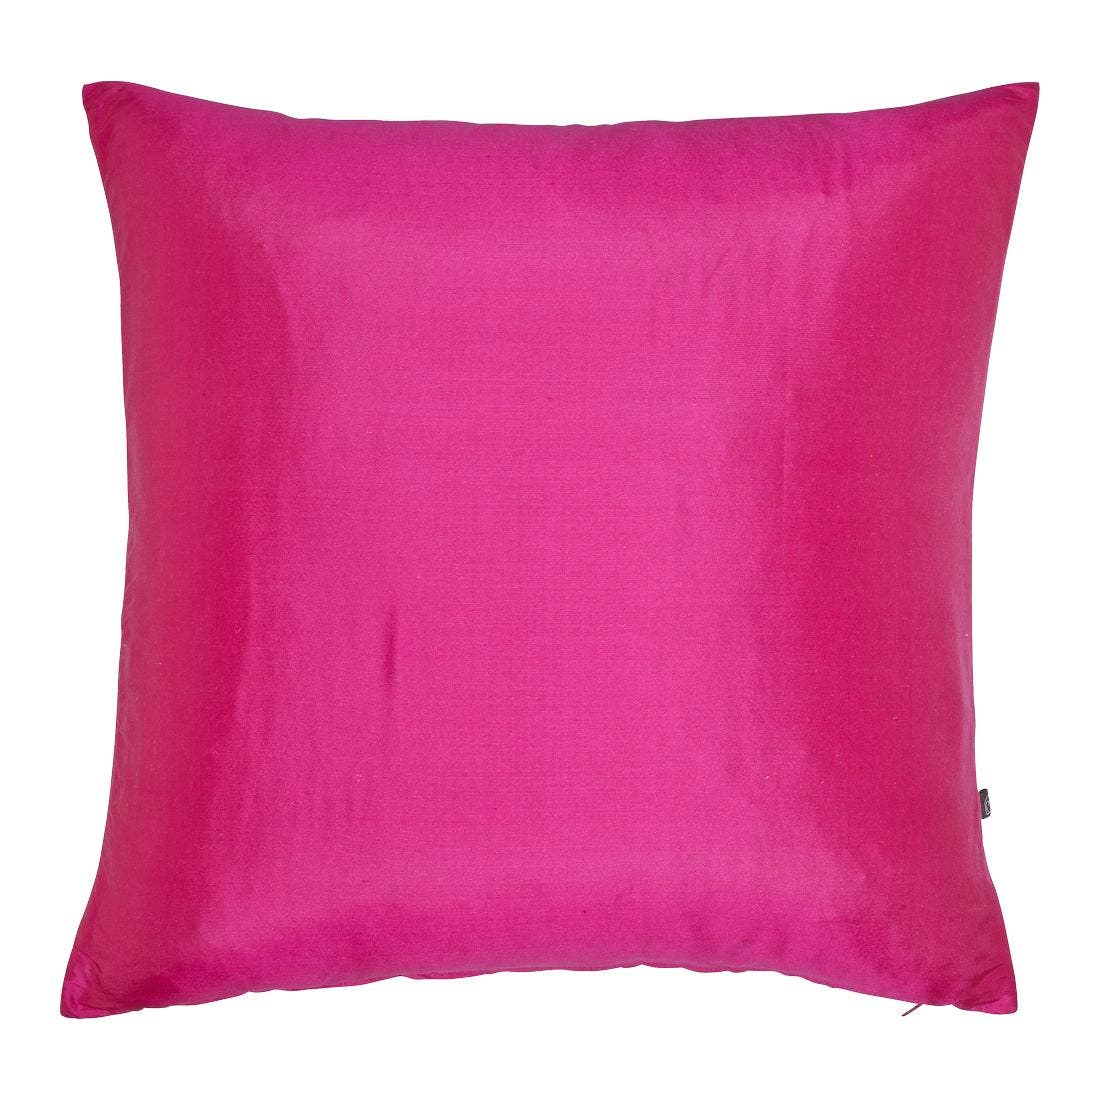 25022383-jules-pillows-stools-decorative-pillow-01